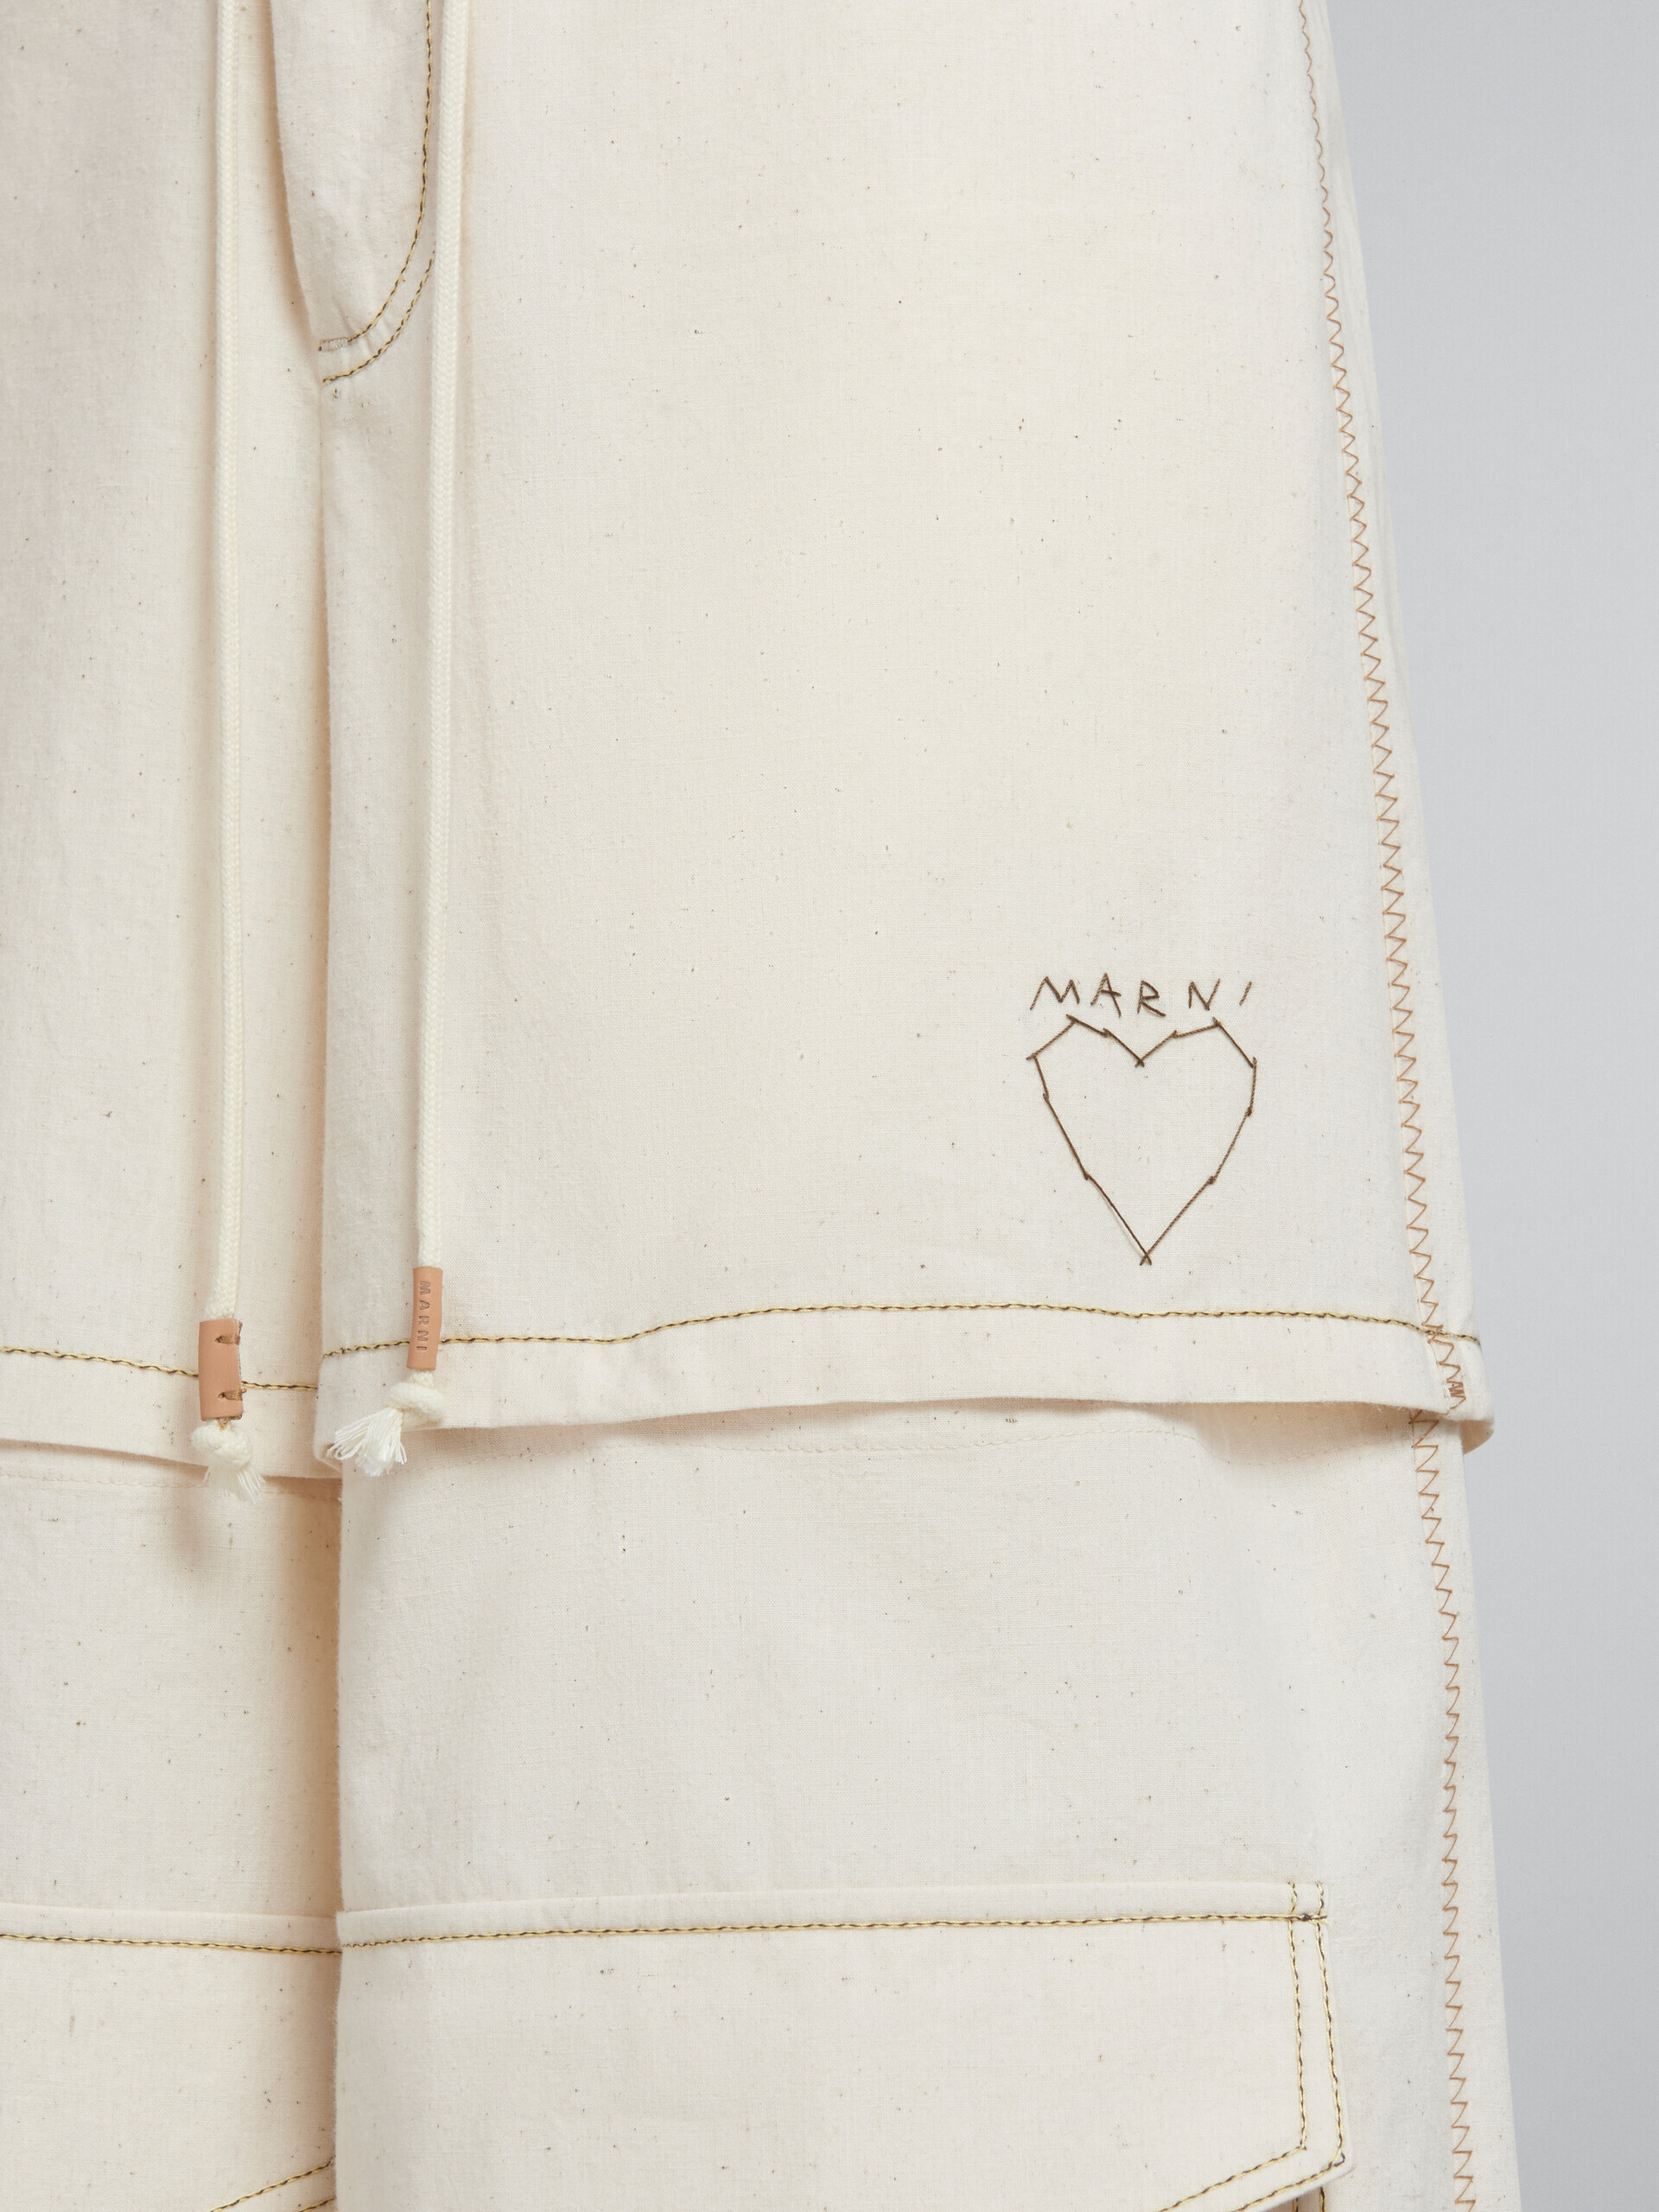 Pantaloni cargo in tela di cotone biologico beige chiaro con impunture Marni - Pantaloni - Image 4